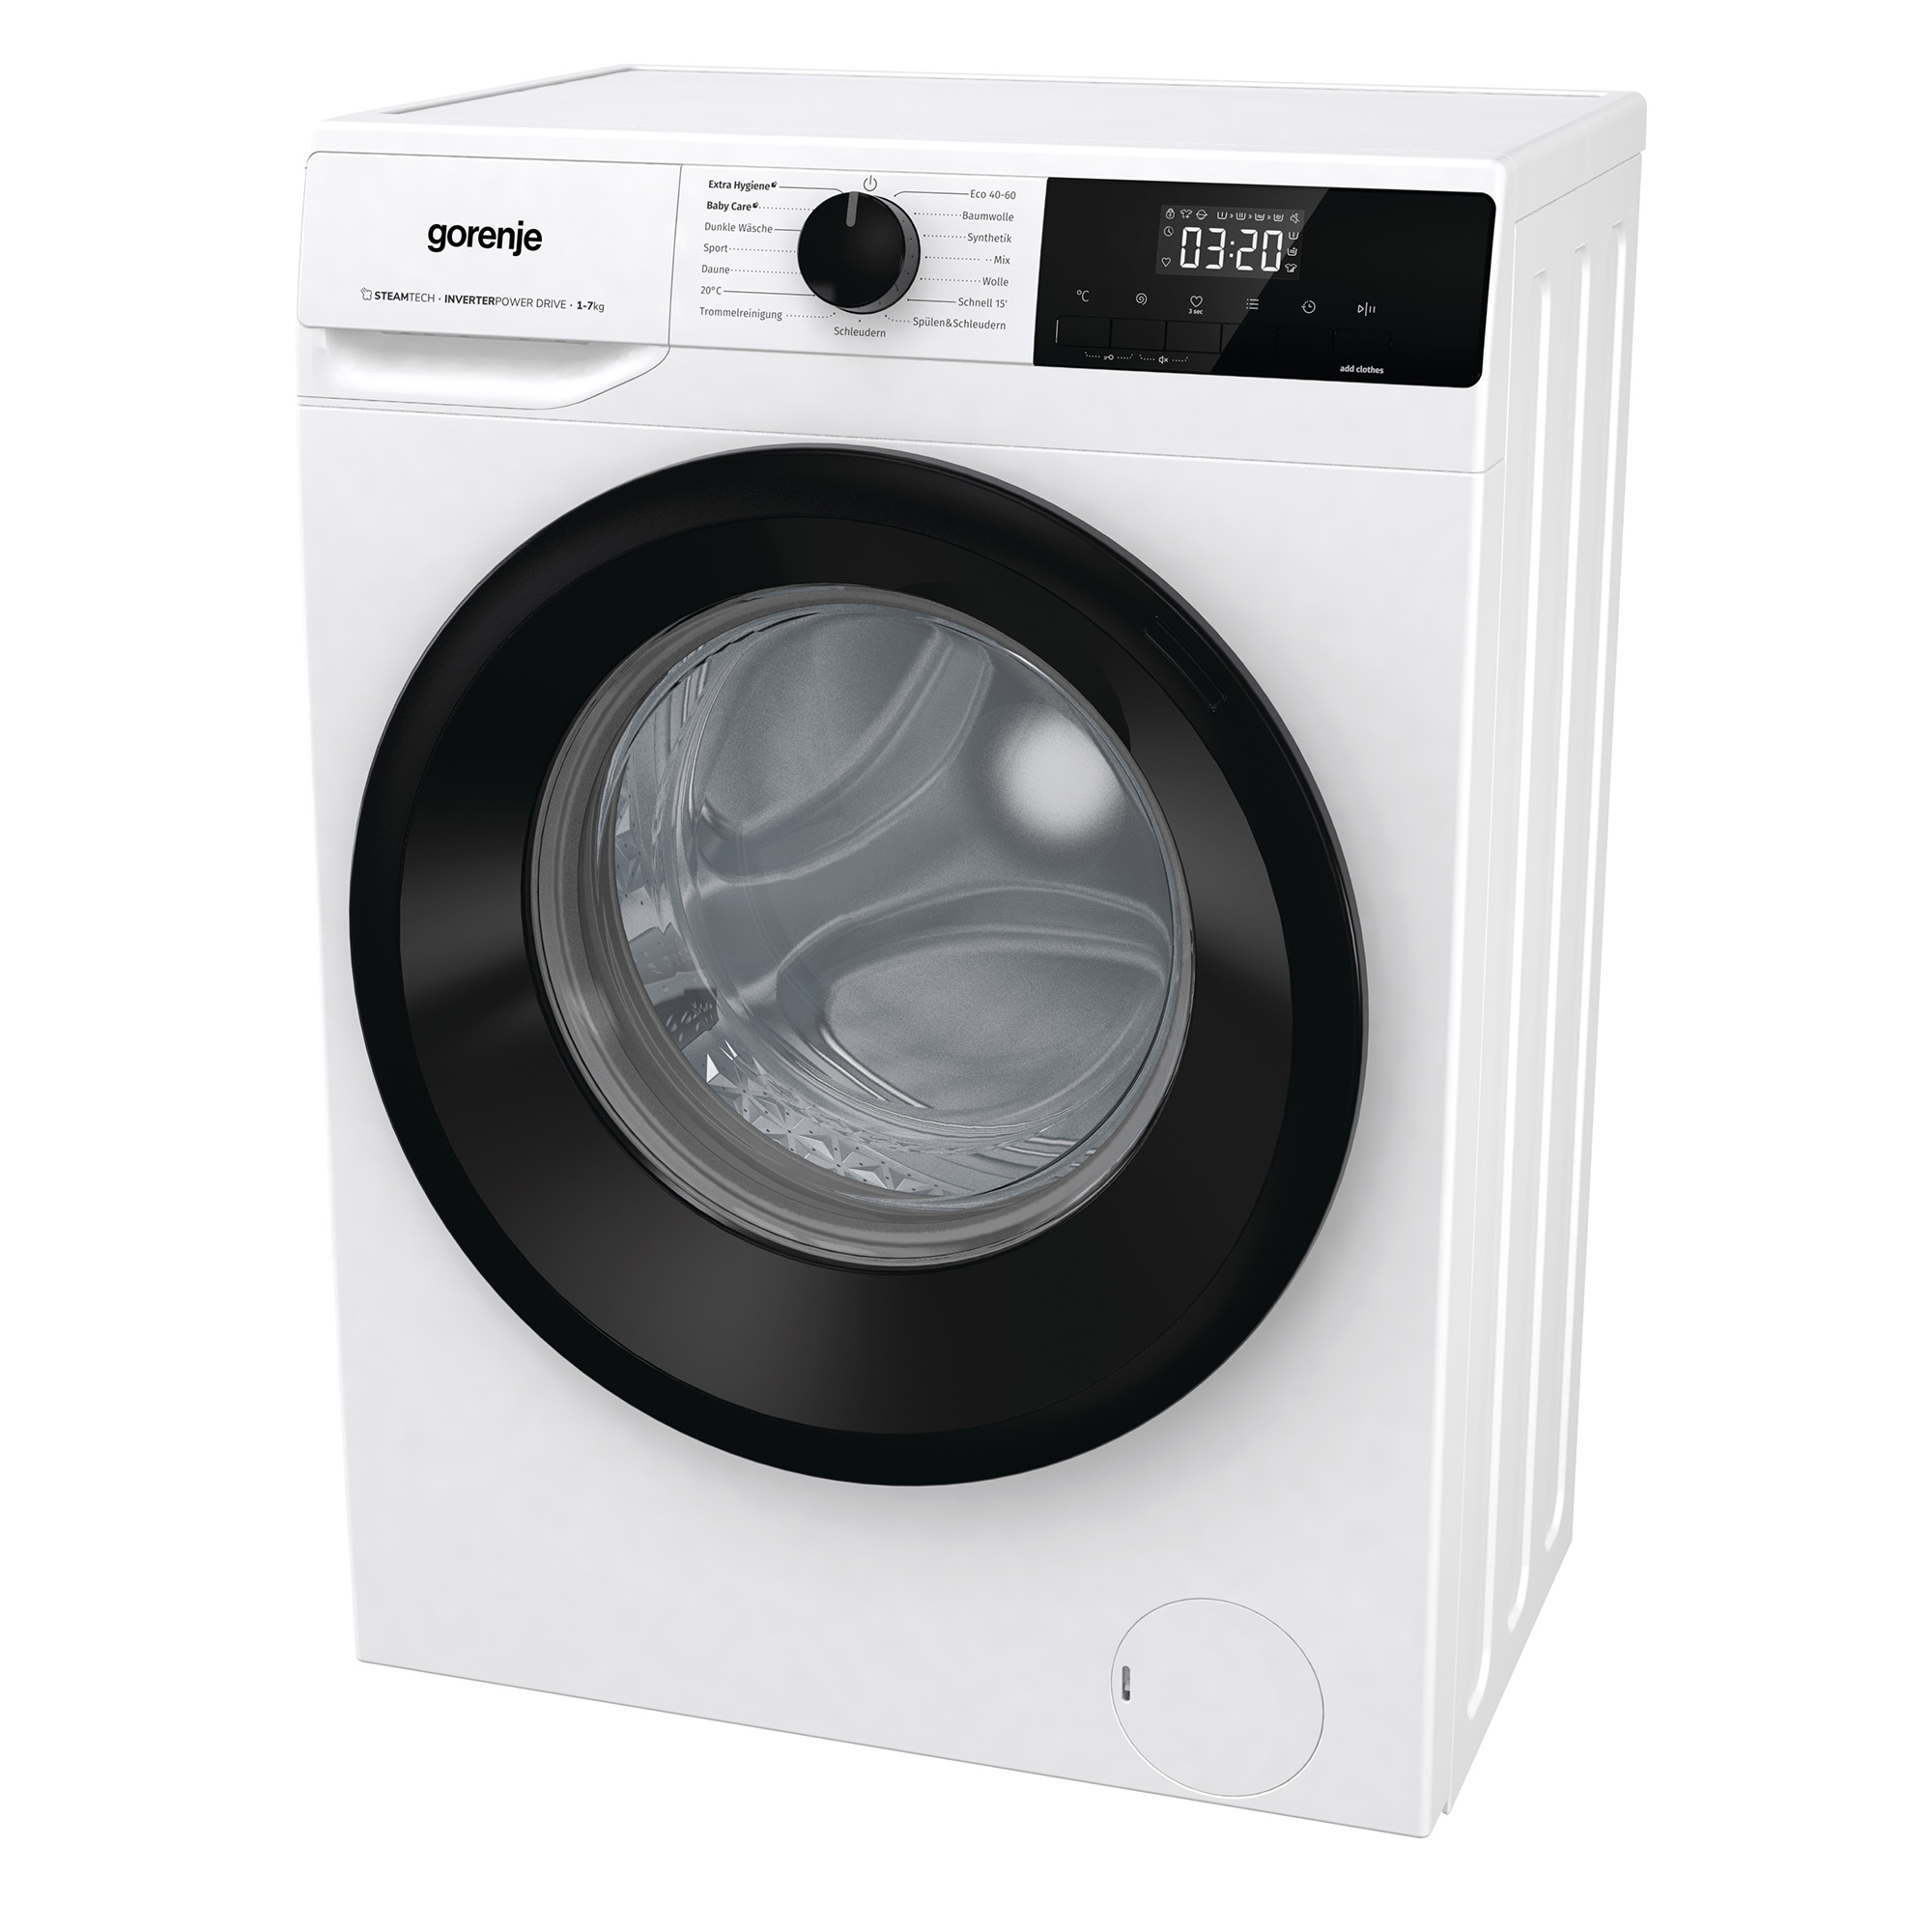 WNHEI74SAPS/DE Waschmaschine (7 kg, GORENJE A)